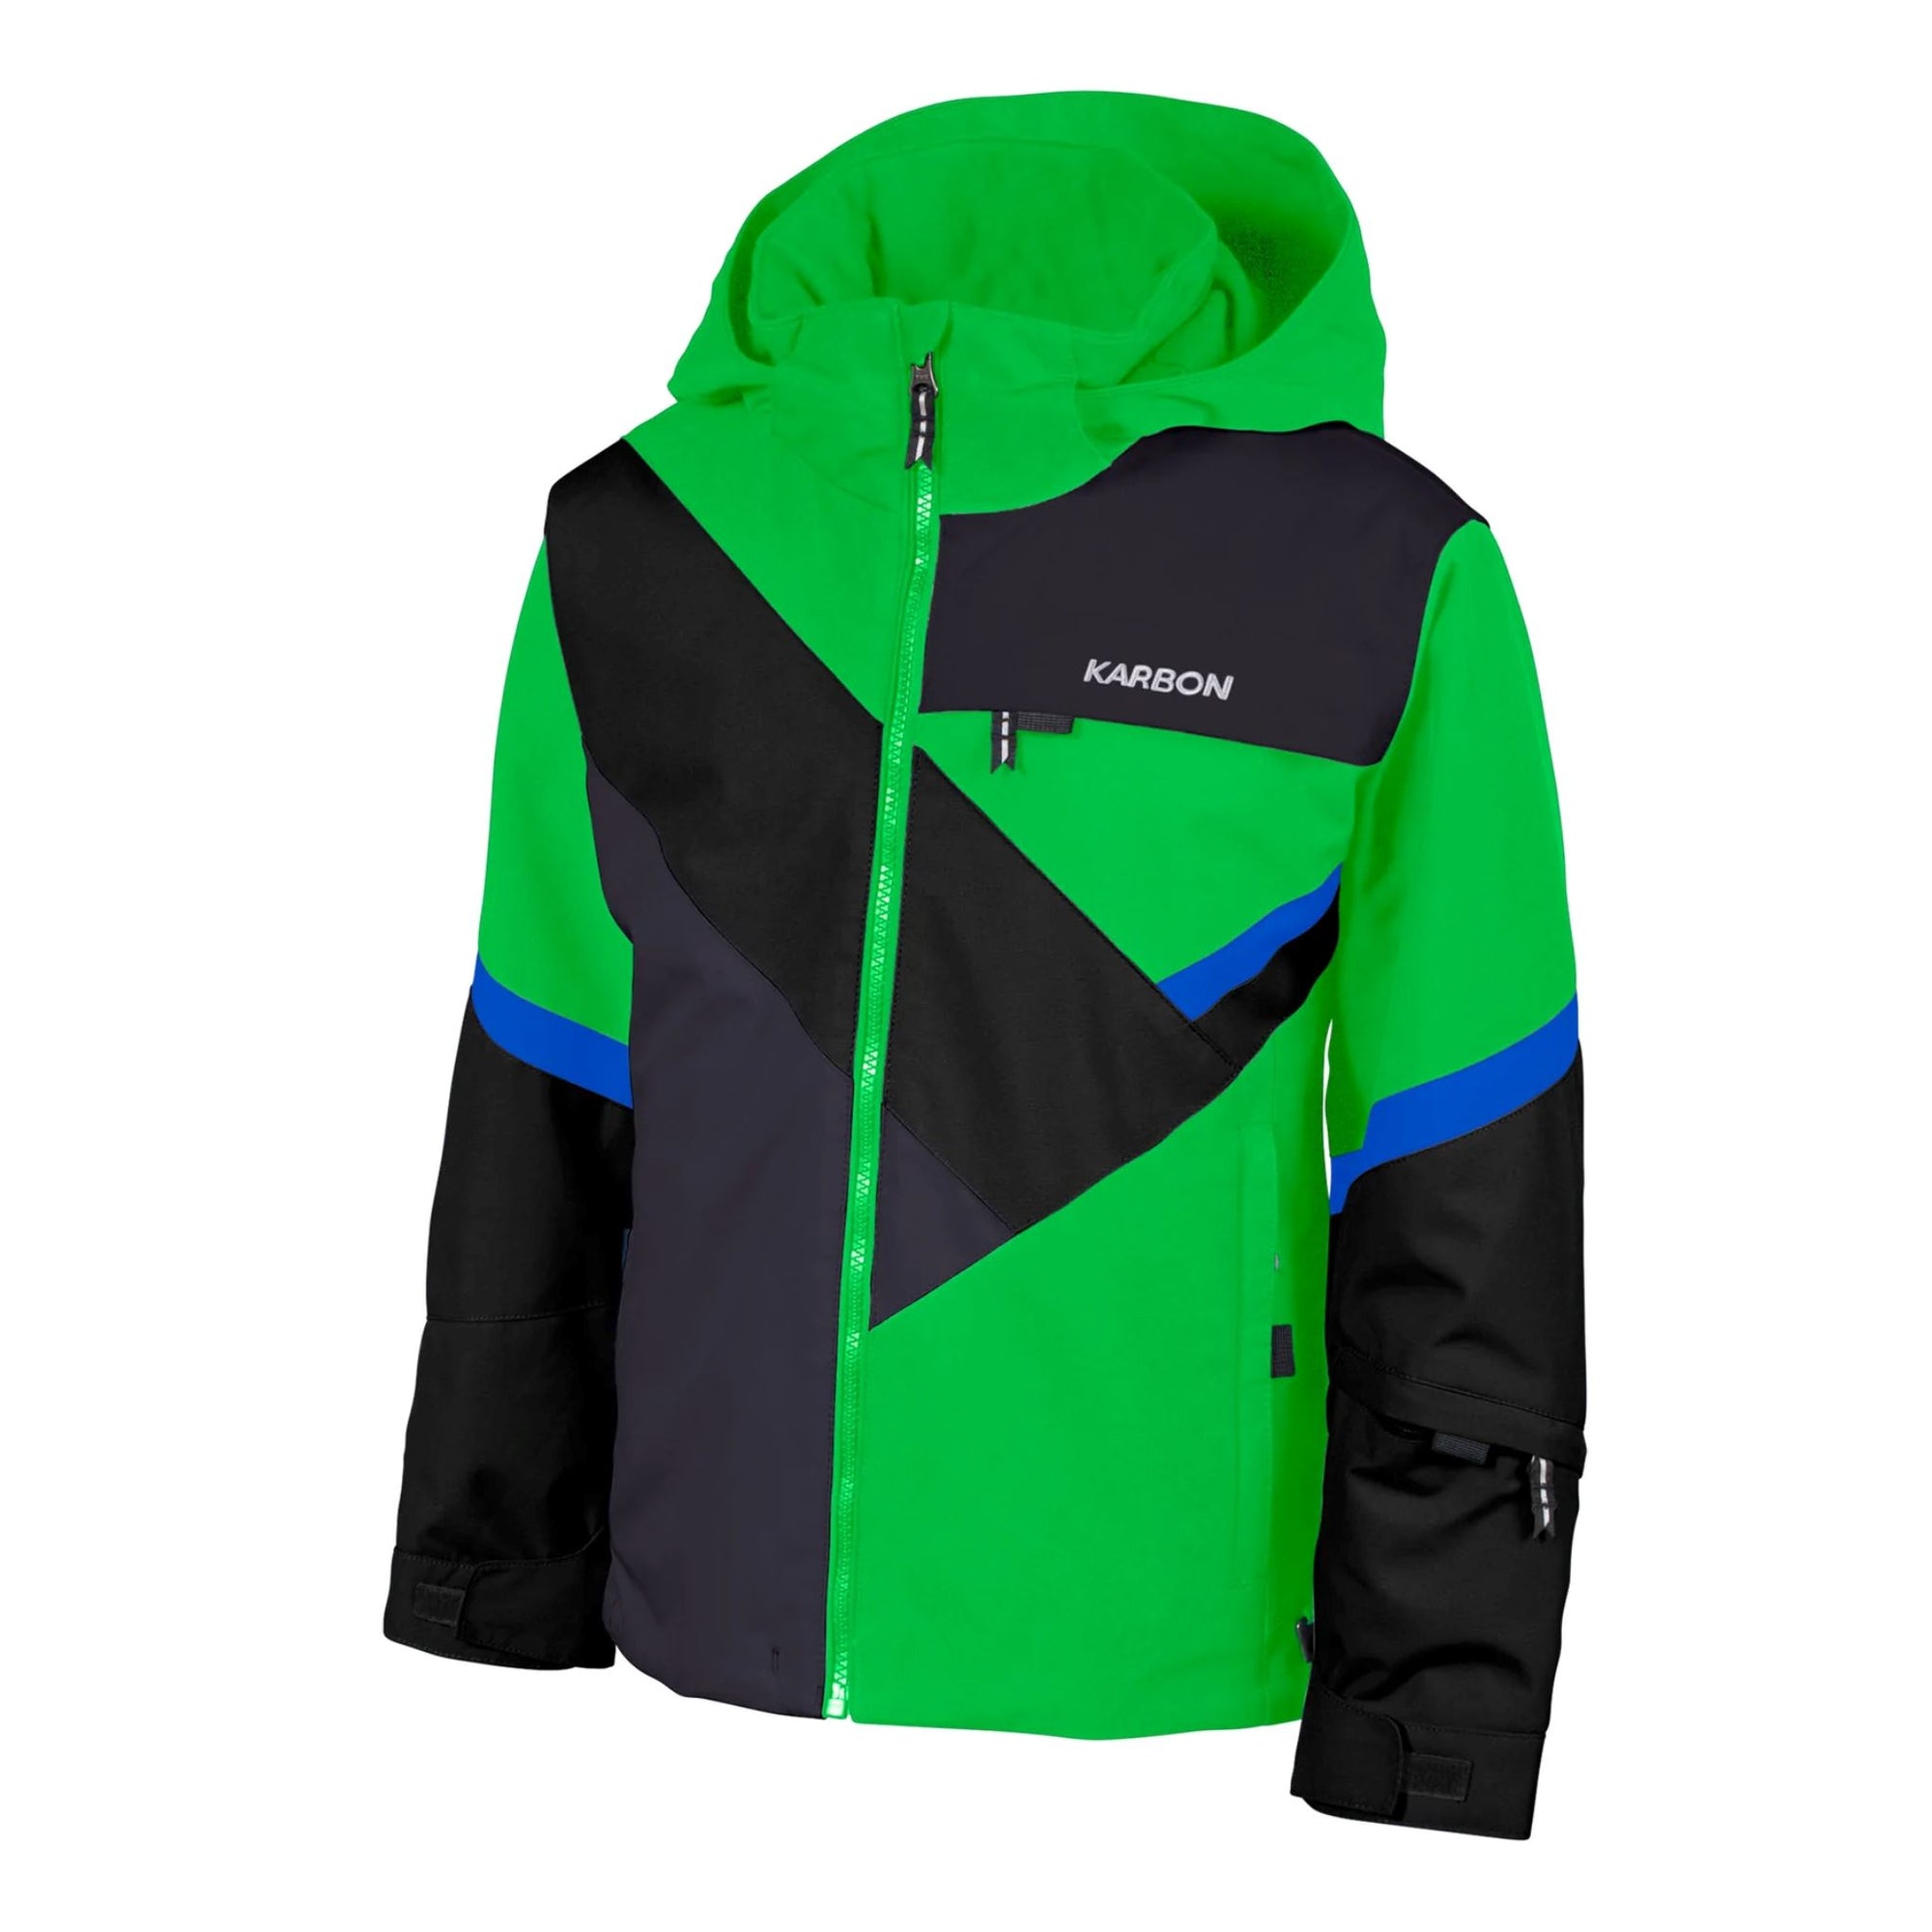 Boys Karbon Inertia Jacket - Electric Green Jackets Karbon 6 INTL / 8 AU 